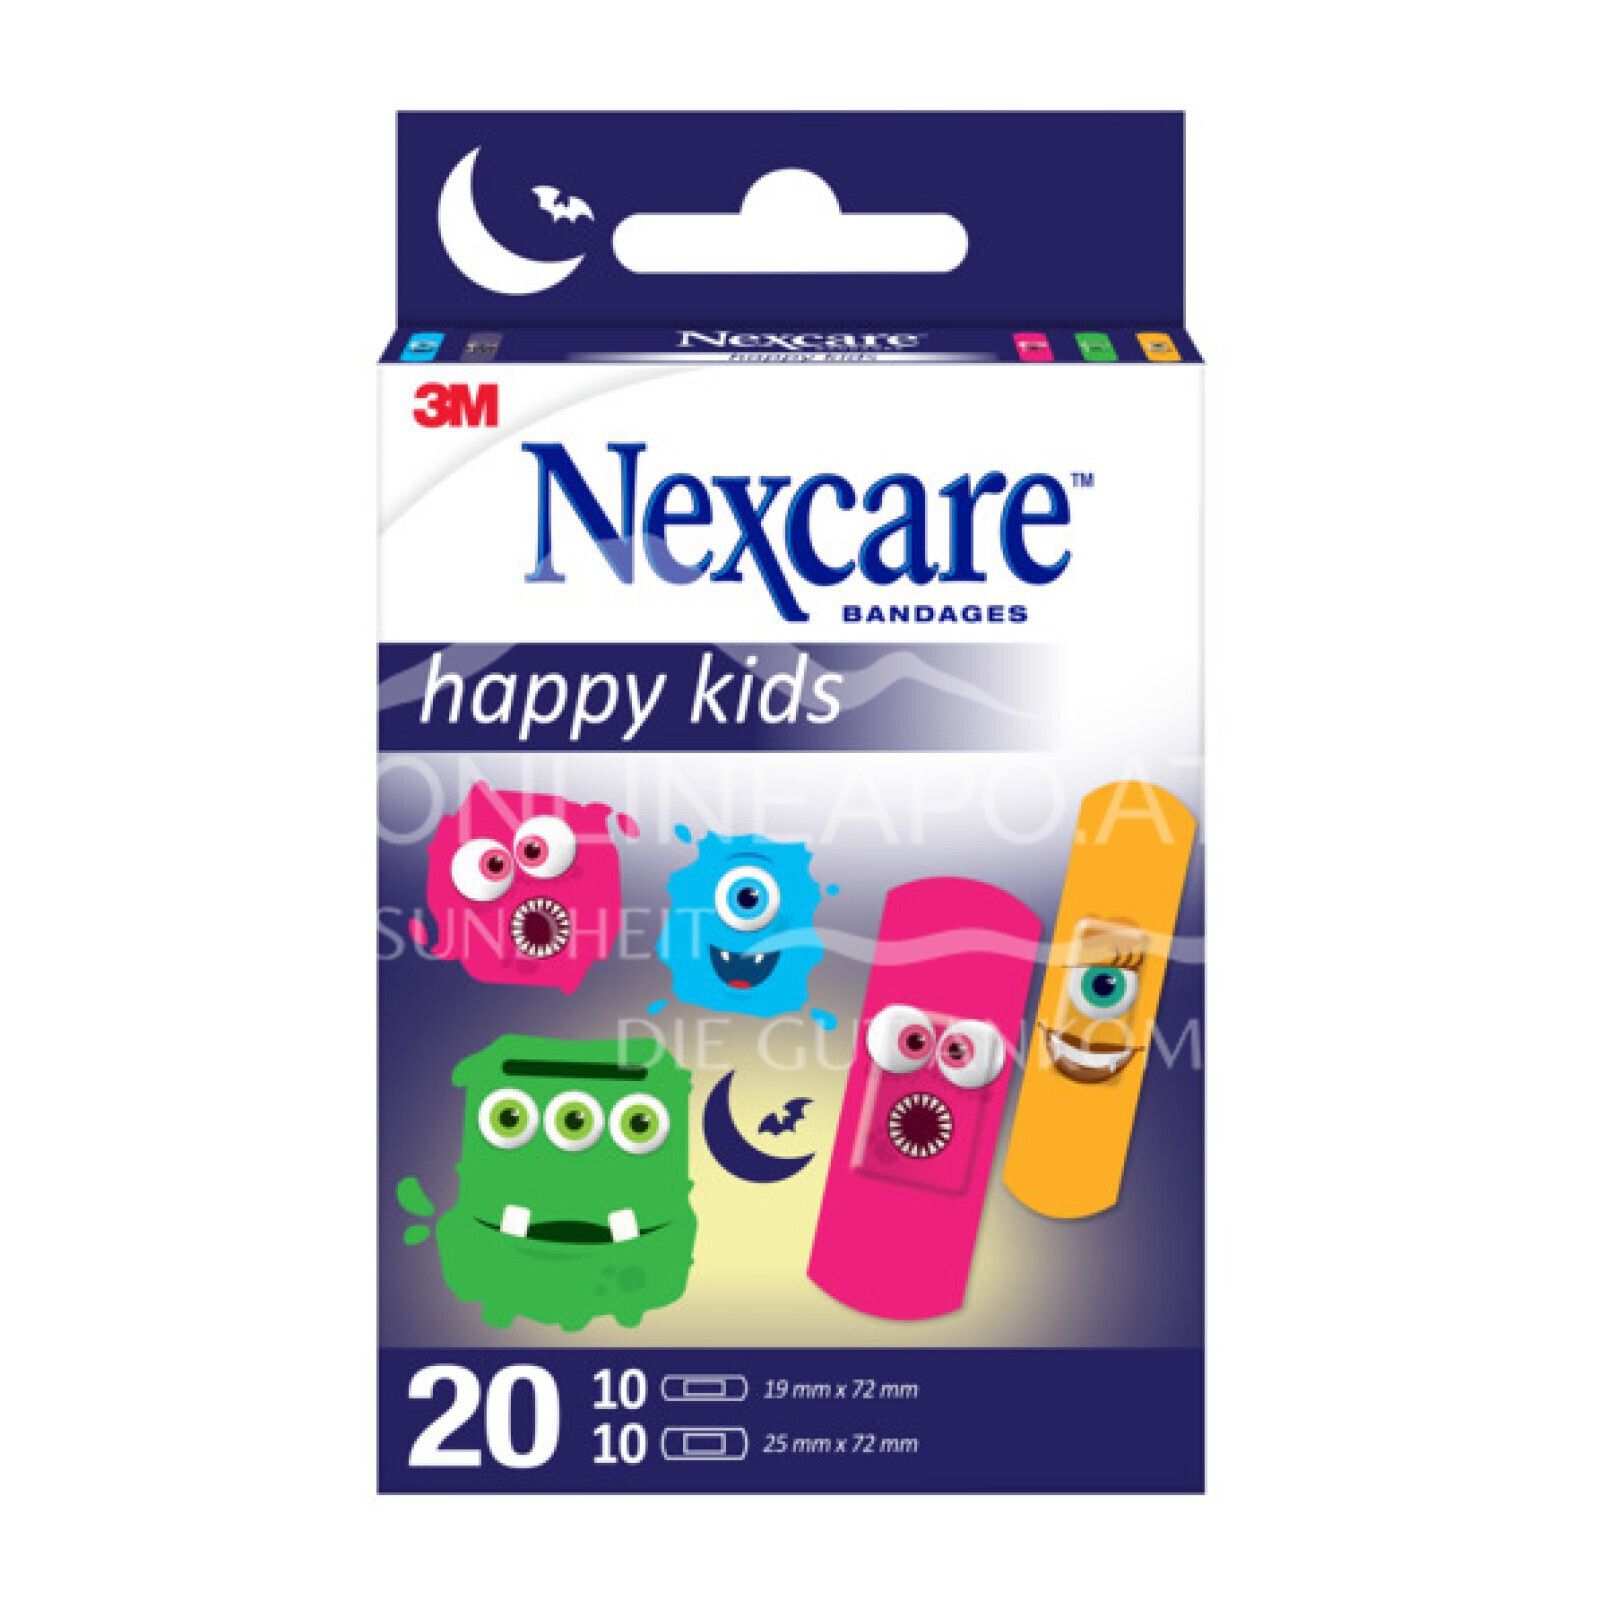 3M Nexcare™ Kinderpflaster Happy Kids Monster, assortiert